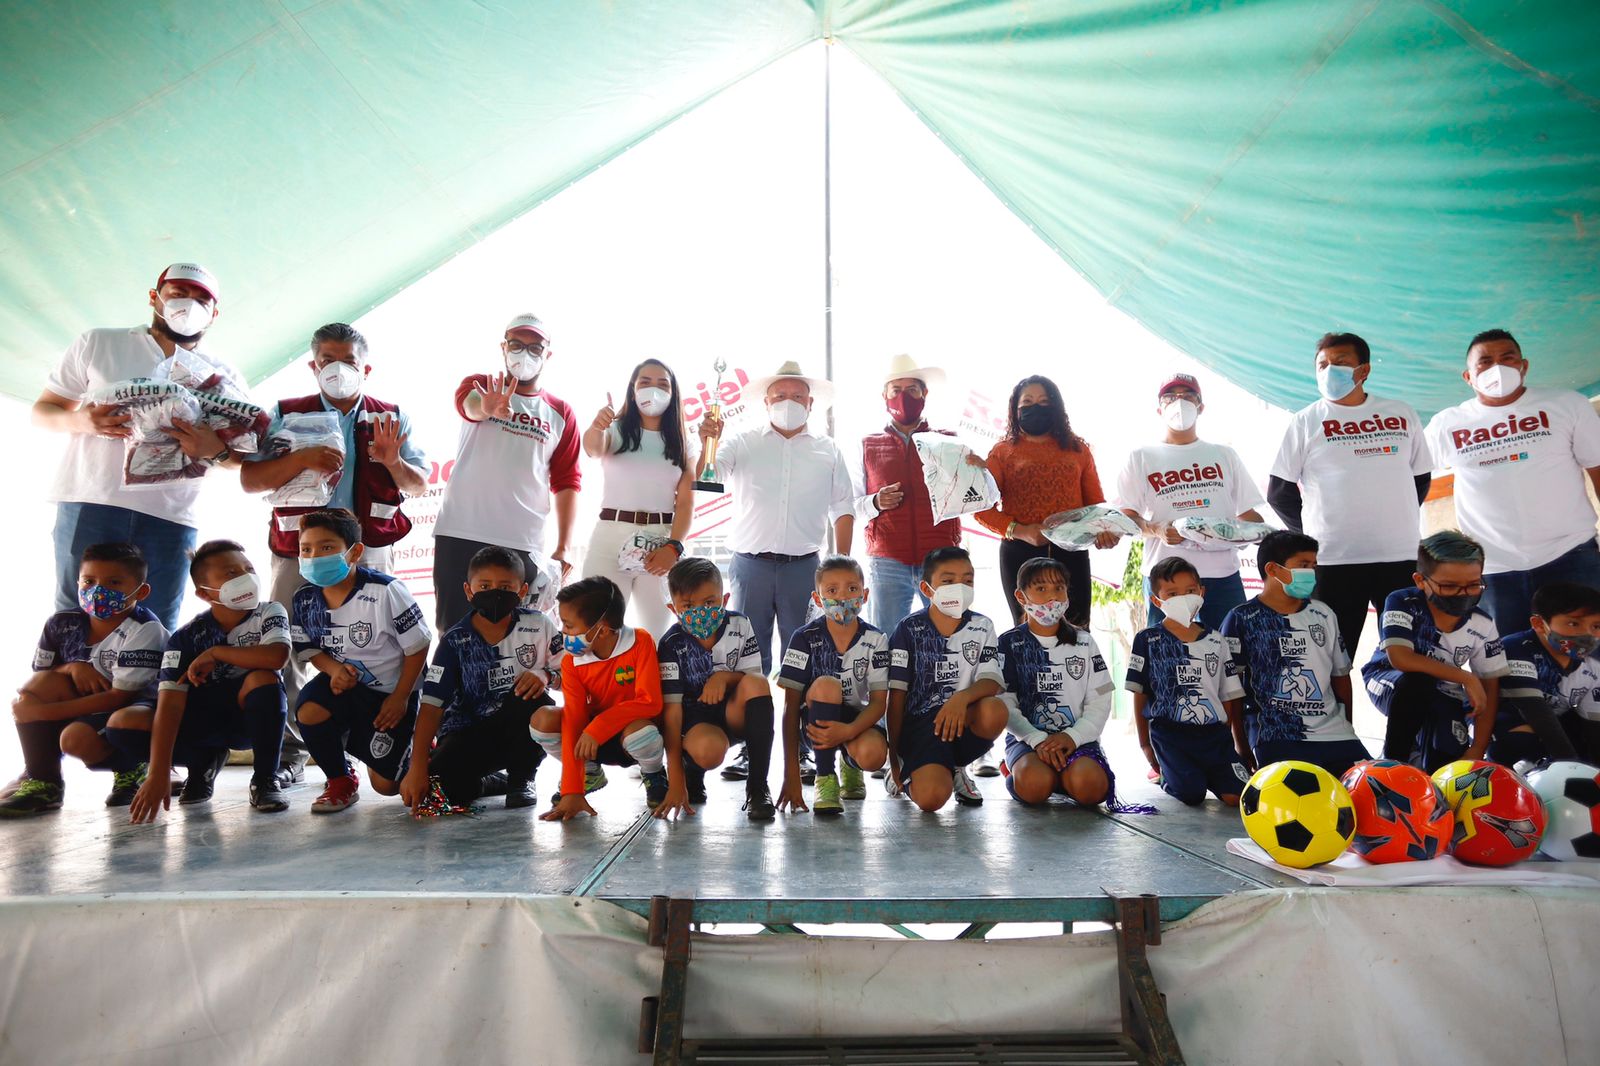 Raciel Pérez Cruz con niños en torneo de futbol